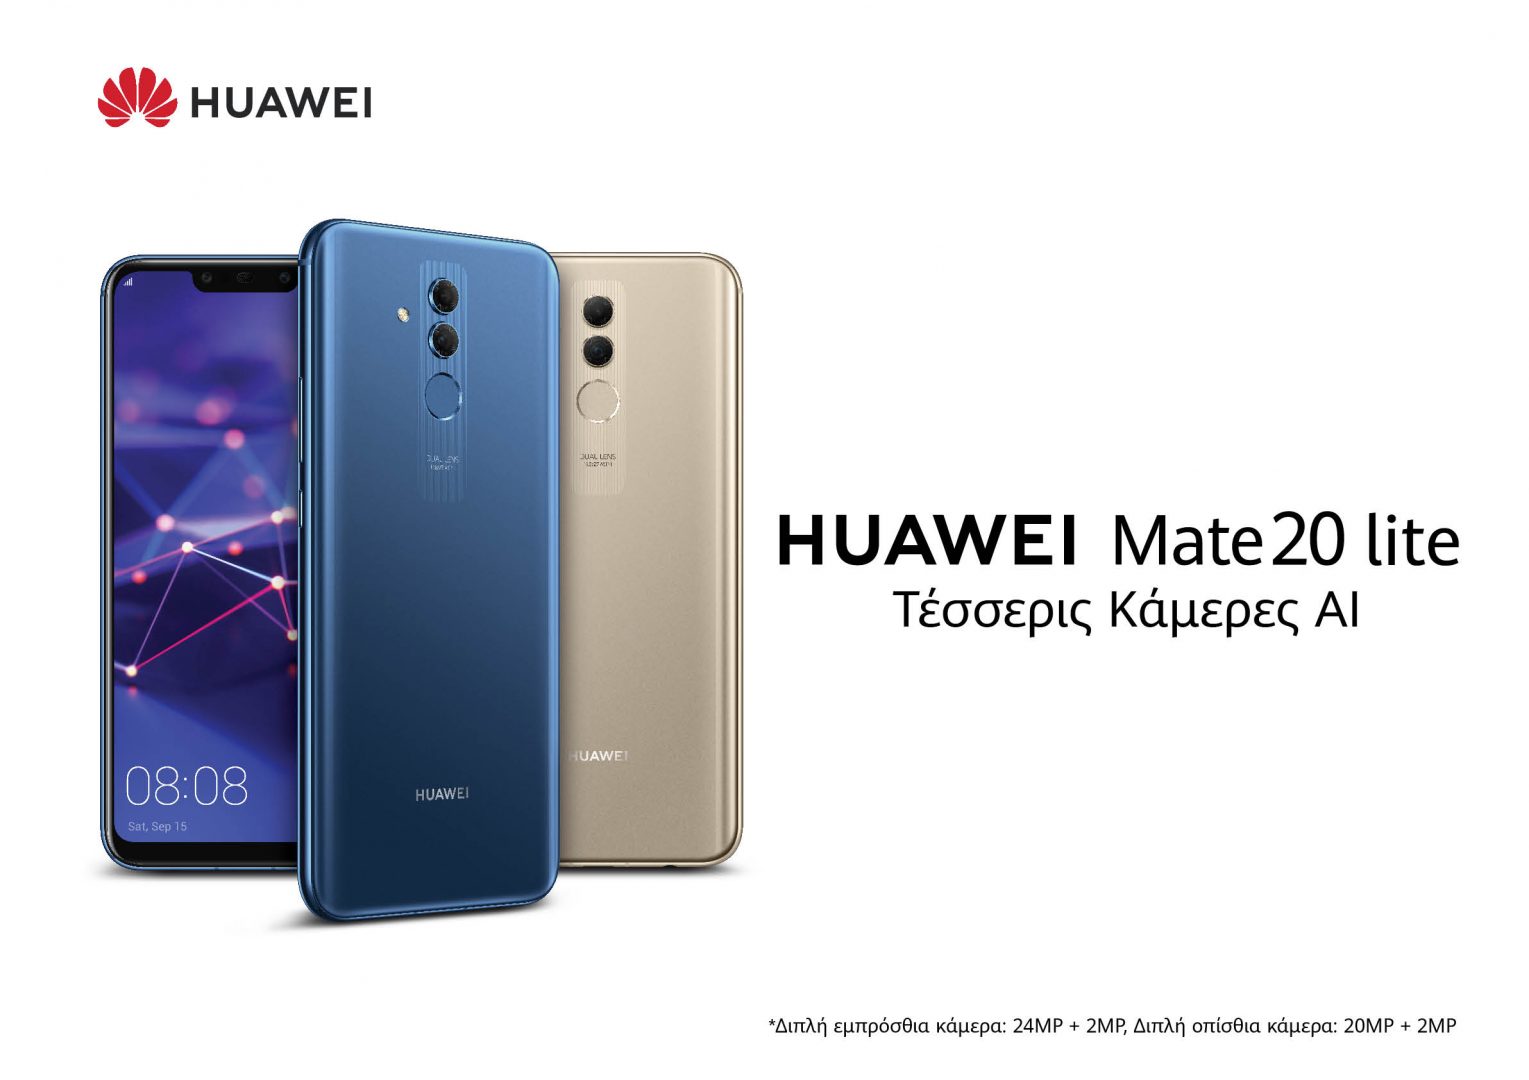 Huawei Mate 20 lite KV